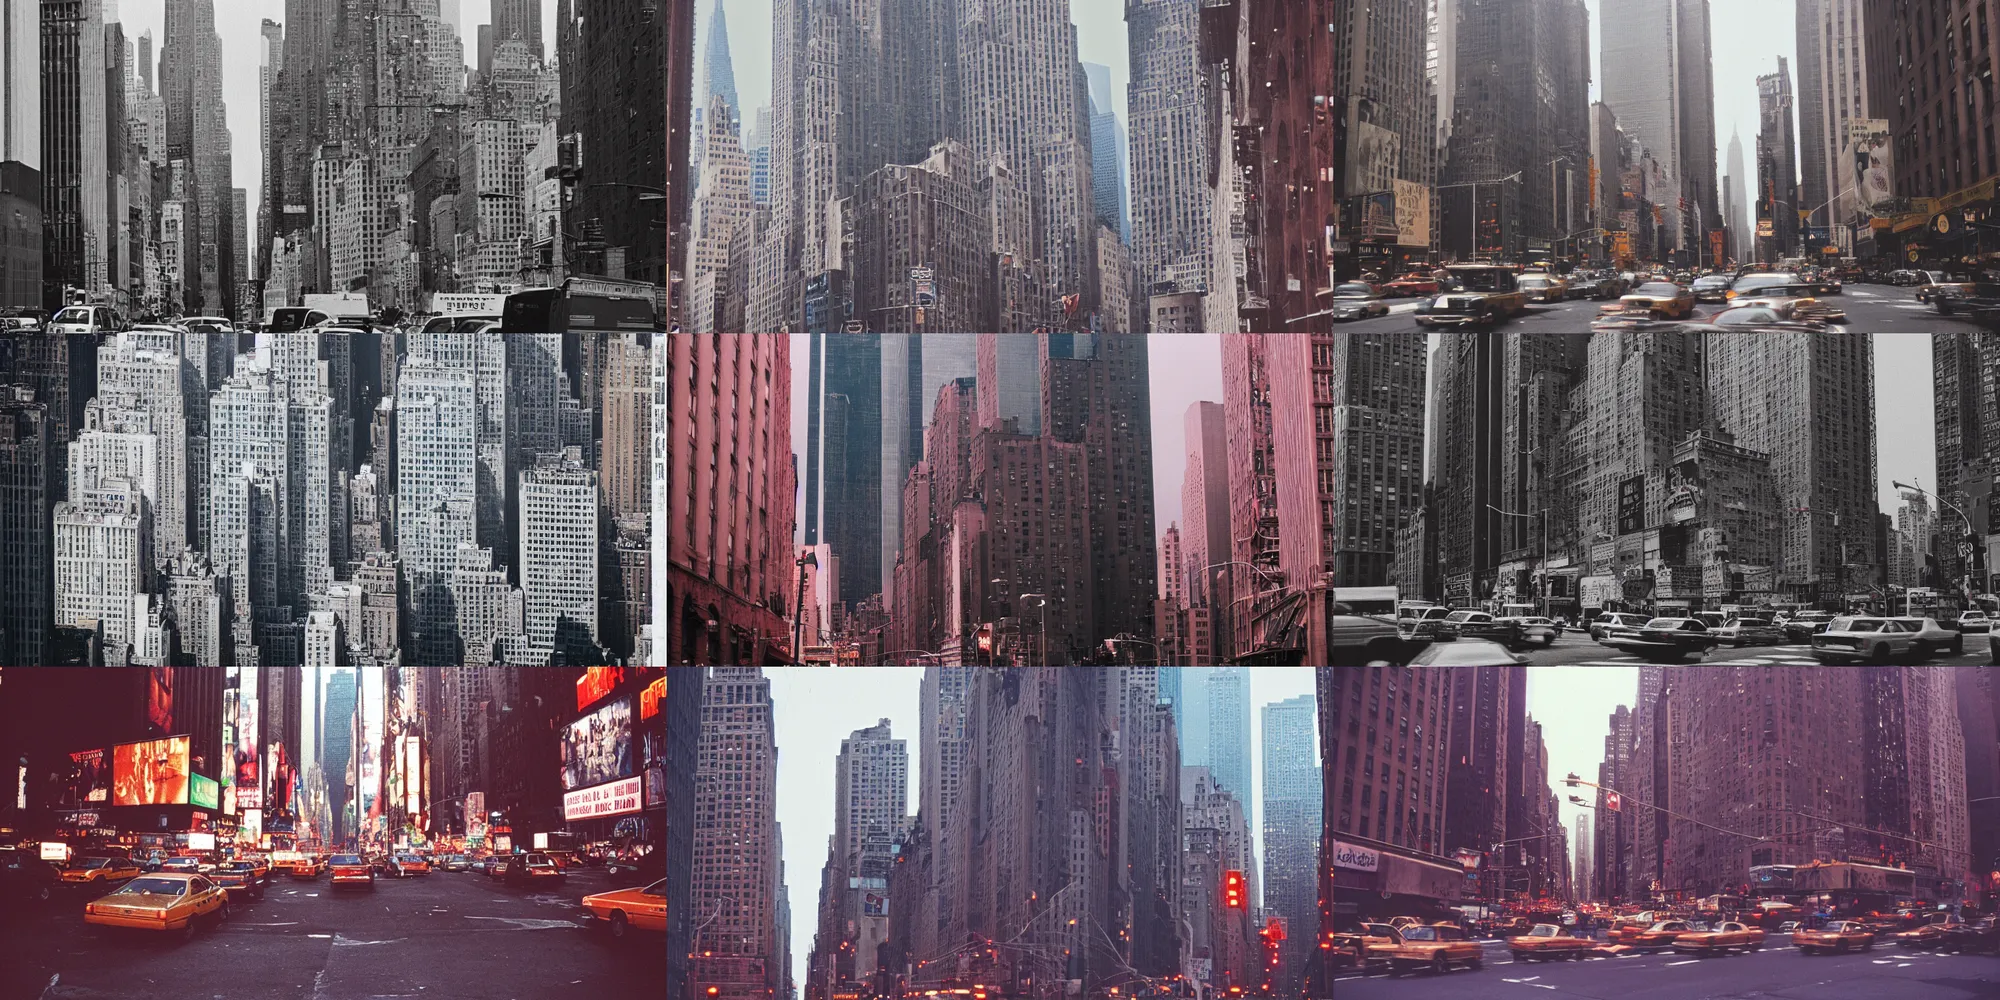 Prompt: new york city melting like wax, cinestill 8 0 0 t, 1 9 8 0 s movie still, film grain